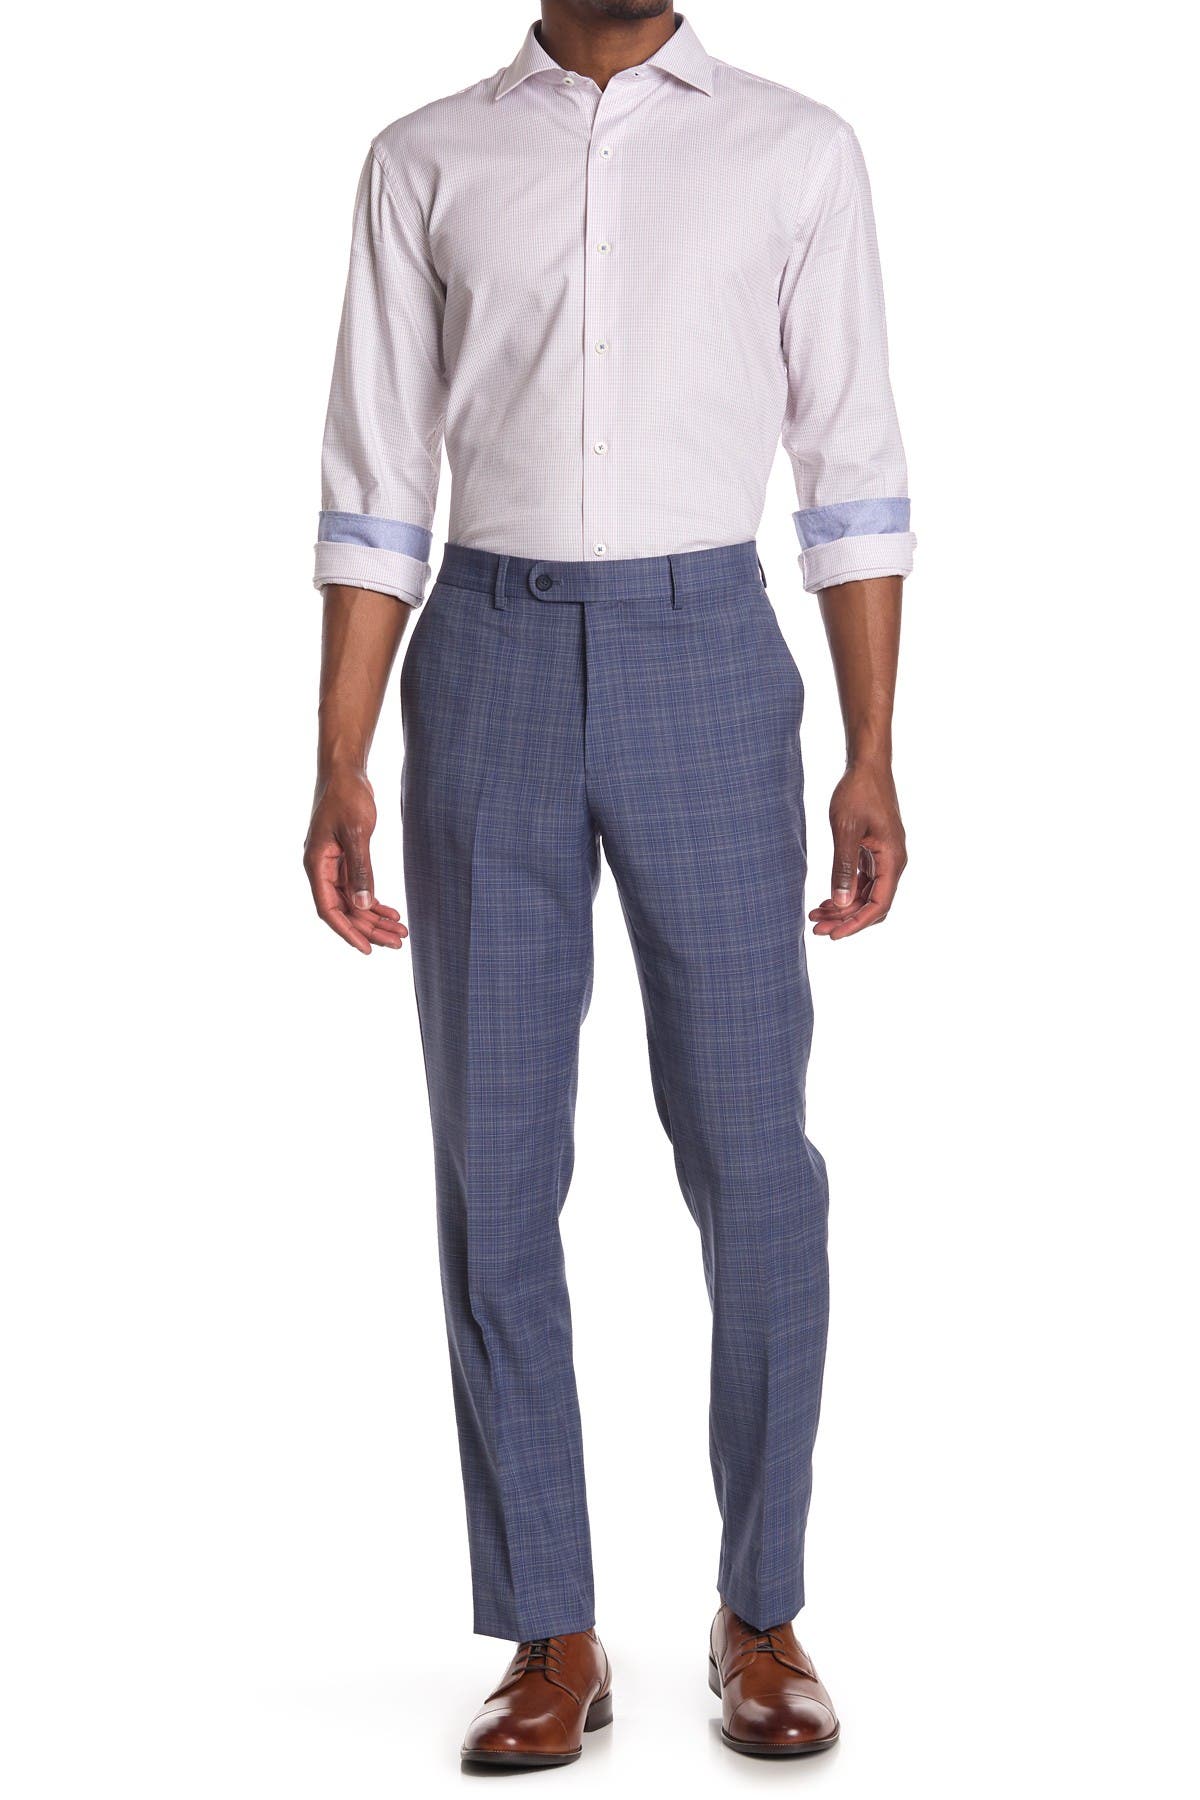 36W X 34L Original Penguin Mens Slim Fit Suit Separates-Custom Jacket Size Selection Charcoal Solid Pant